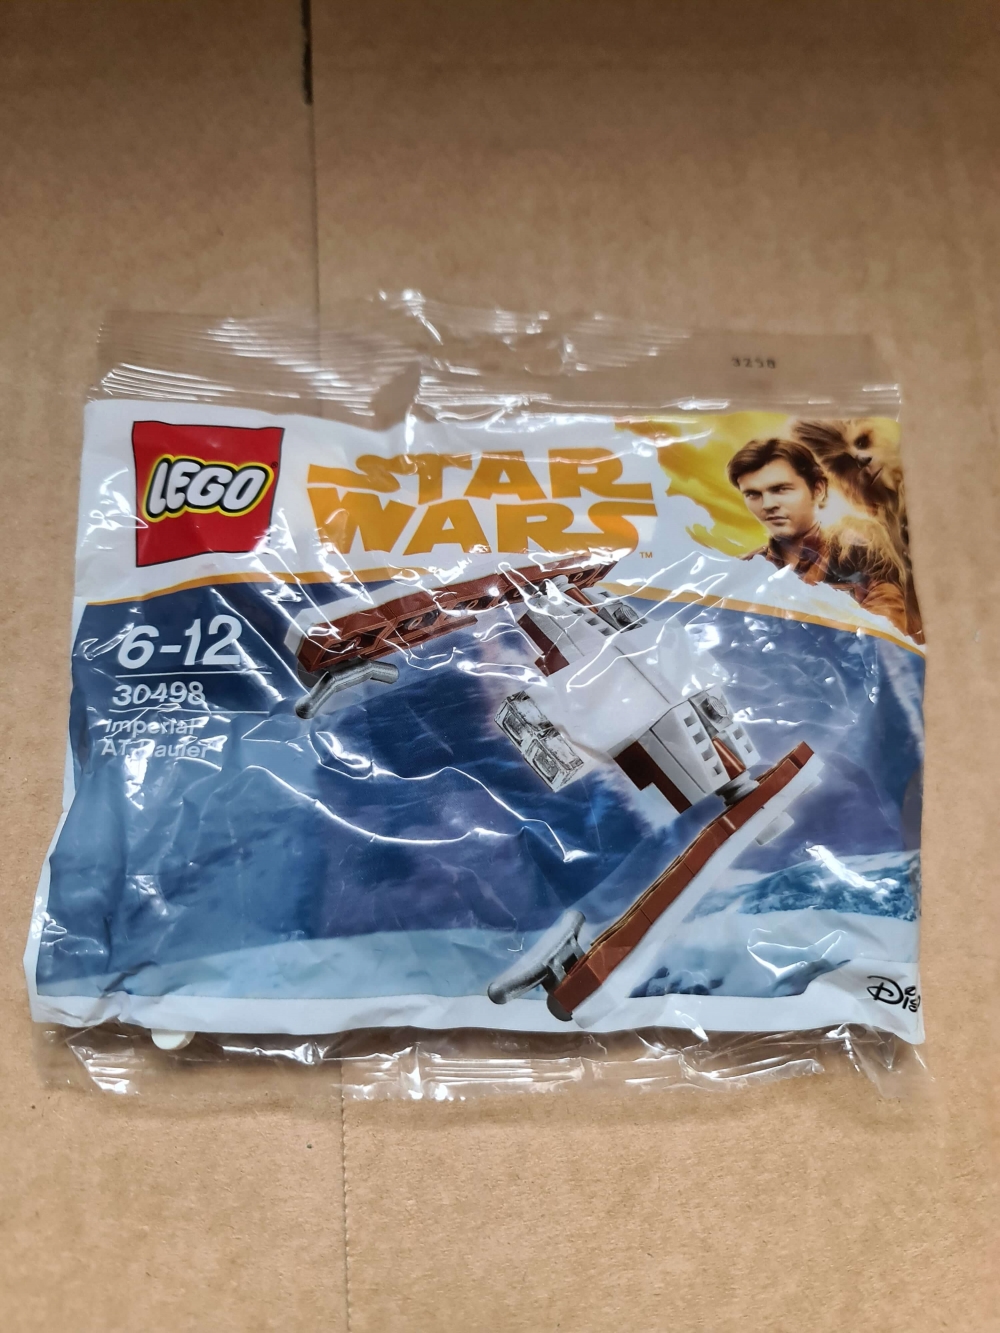 Sett 30498 fra Lego Star Wars serien.
Nytt og forseglet.